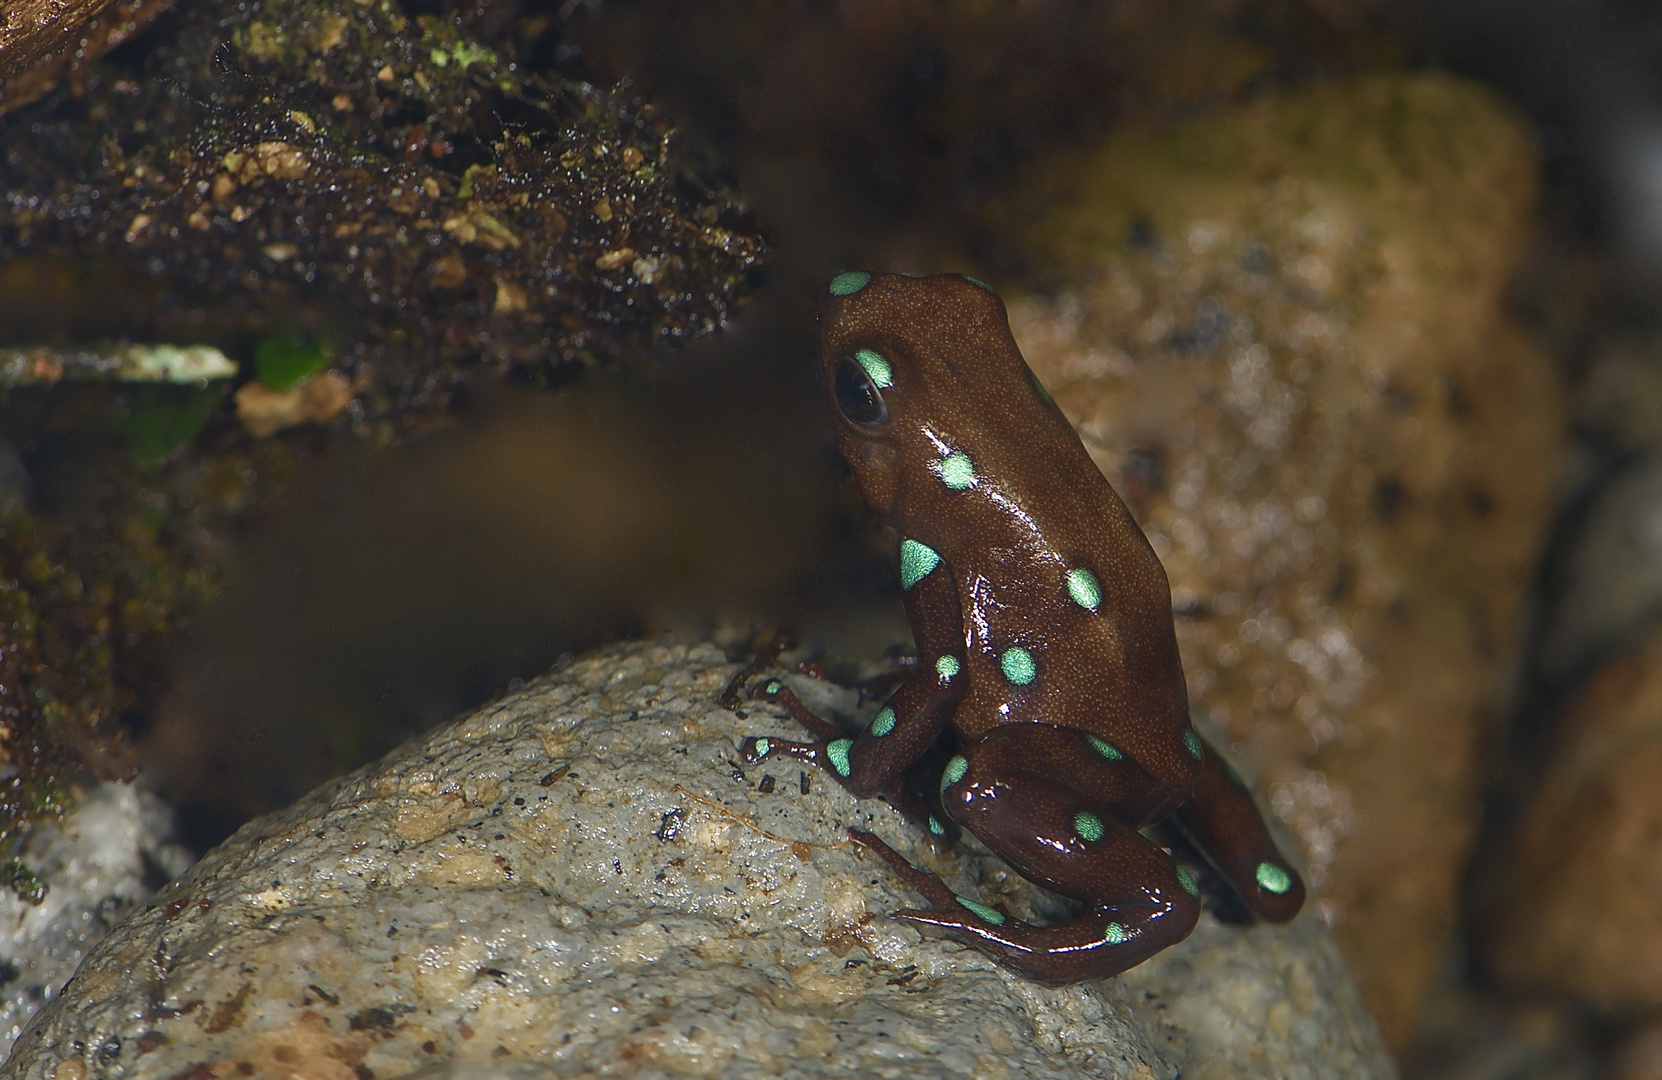 Pfeilgiftfrosch aus dem Bergregenwald von Panama